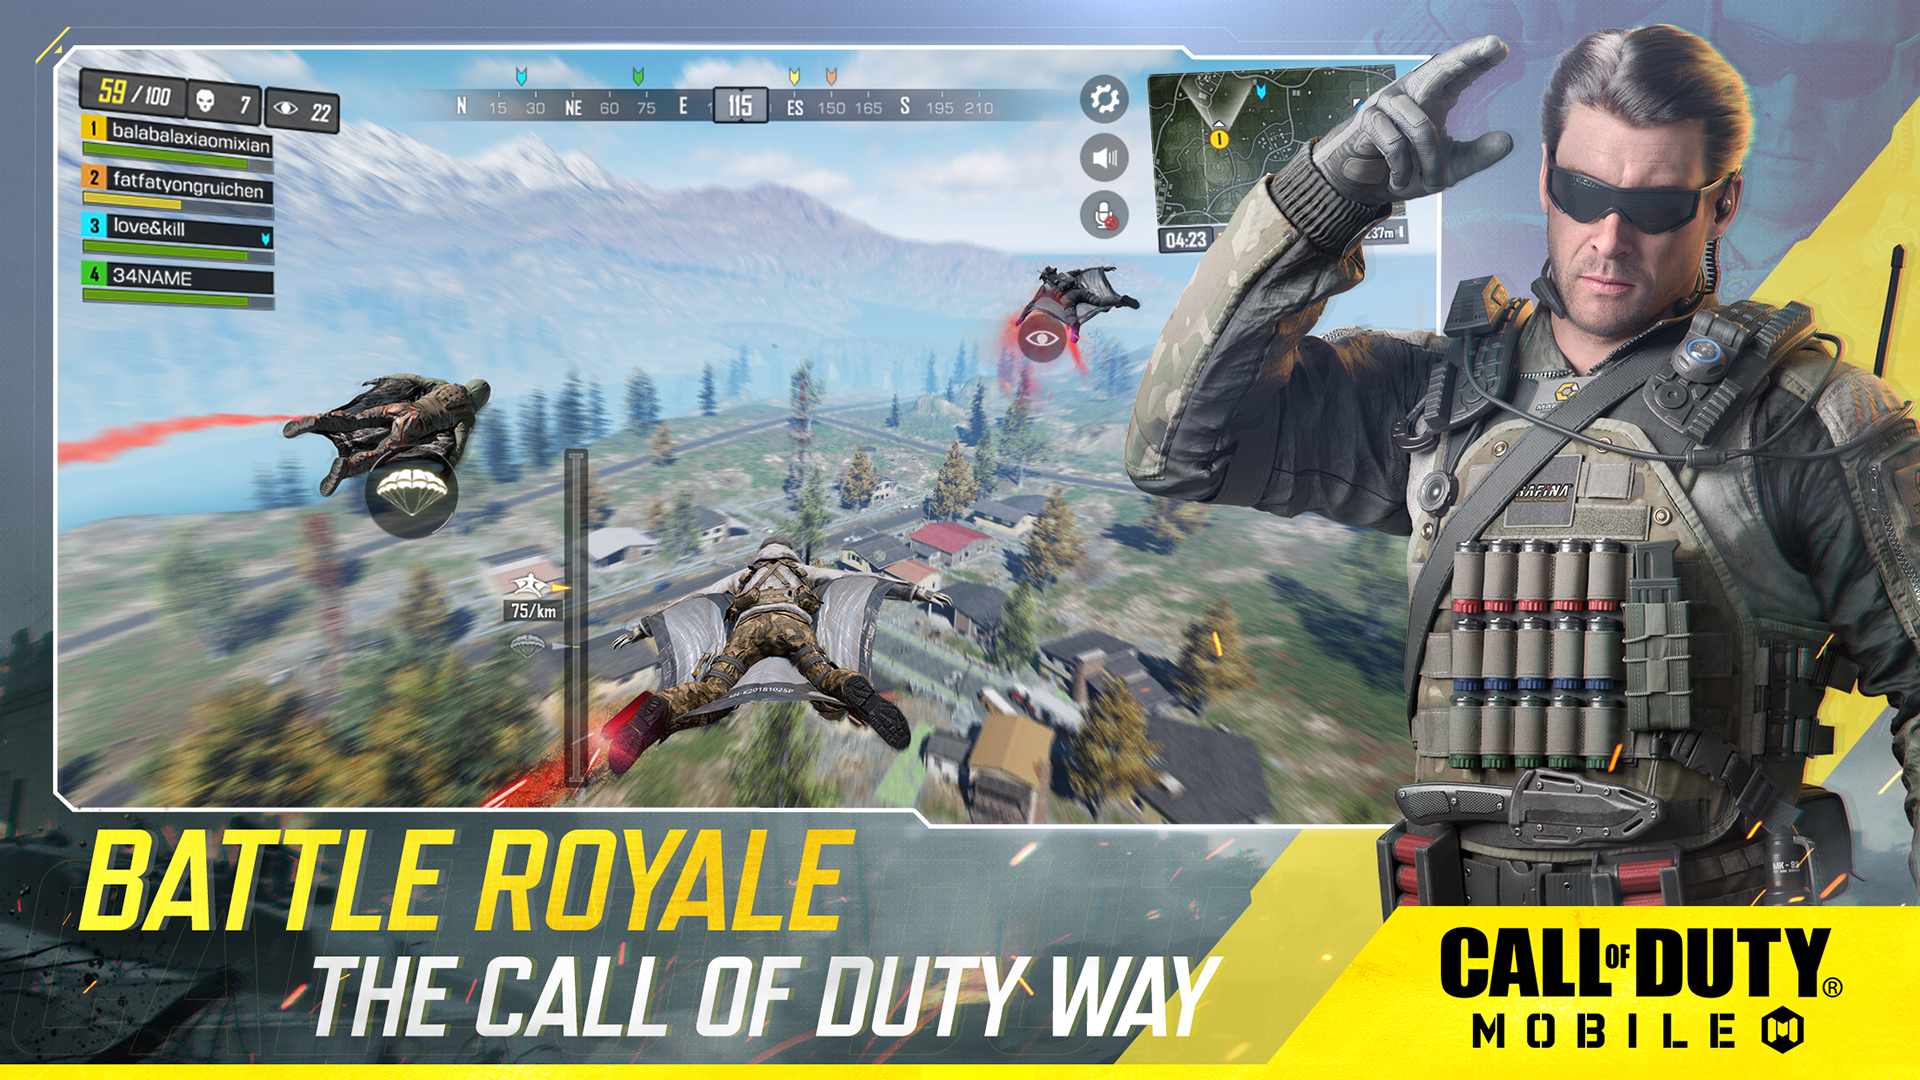 دانلود بازی کالاف دیوتی موبایل Call of Duty Mobile 1.0.37 اندروید